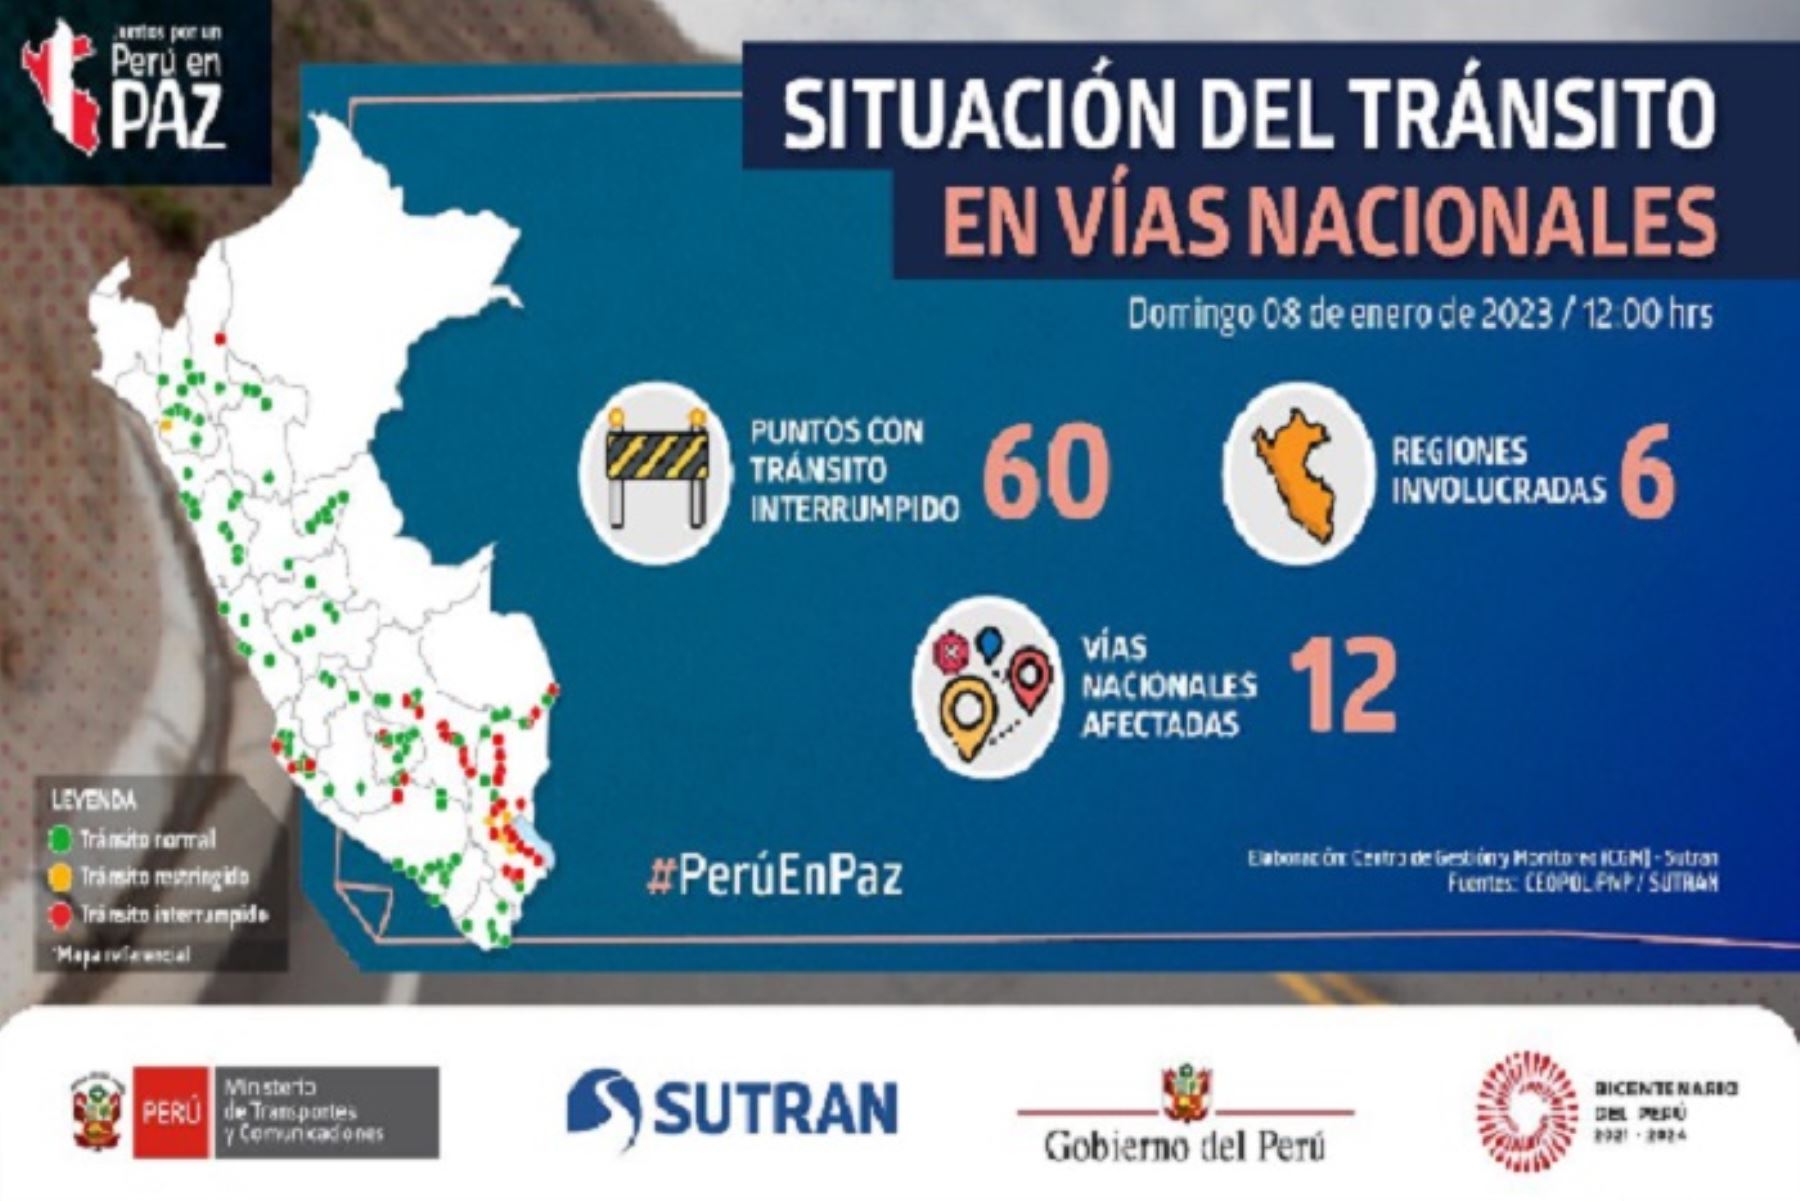 De acuerdo con el reporte del Mapa Interactivo de la Sutran, se mantienen en 12 las vías nacionales afectadas.